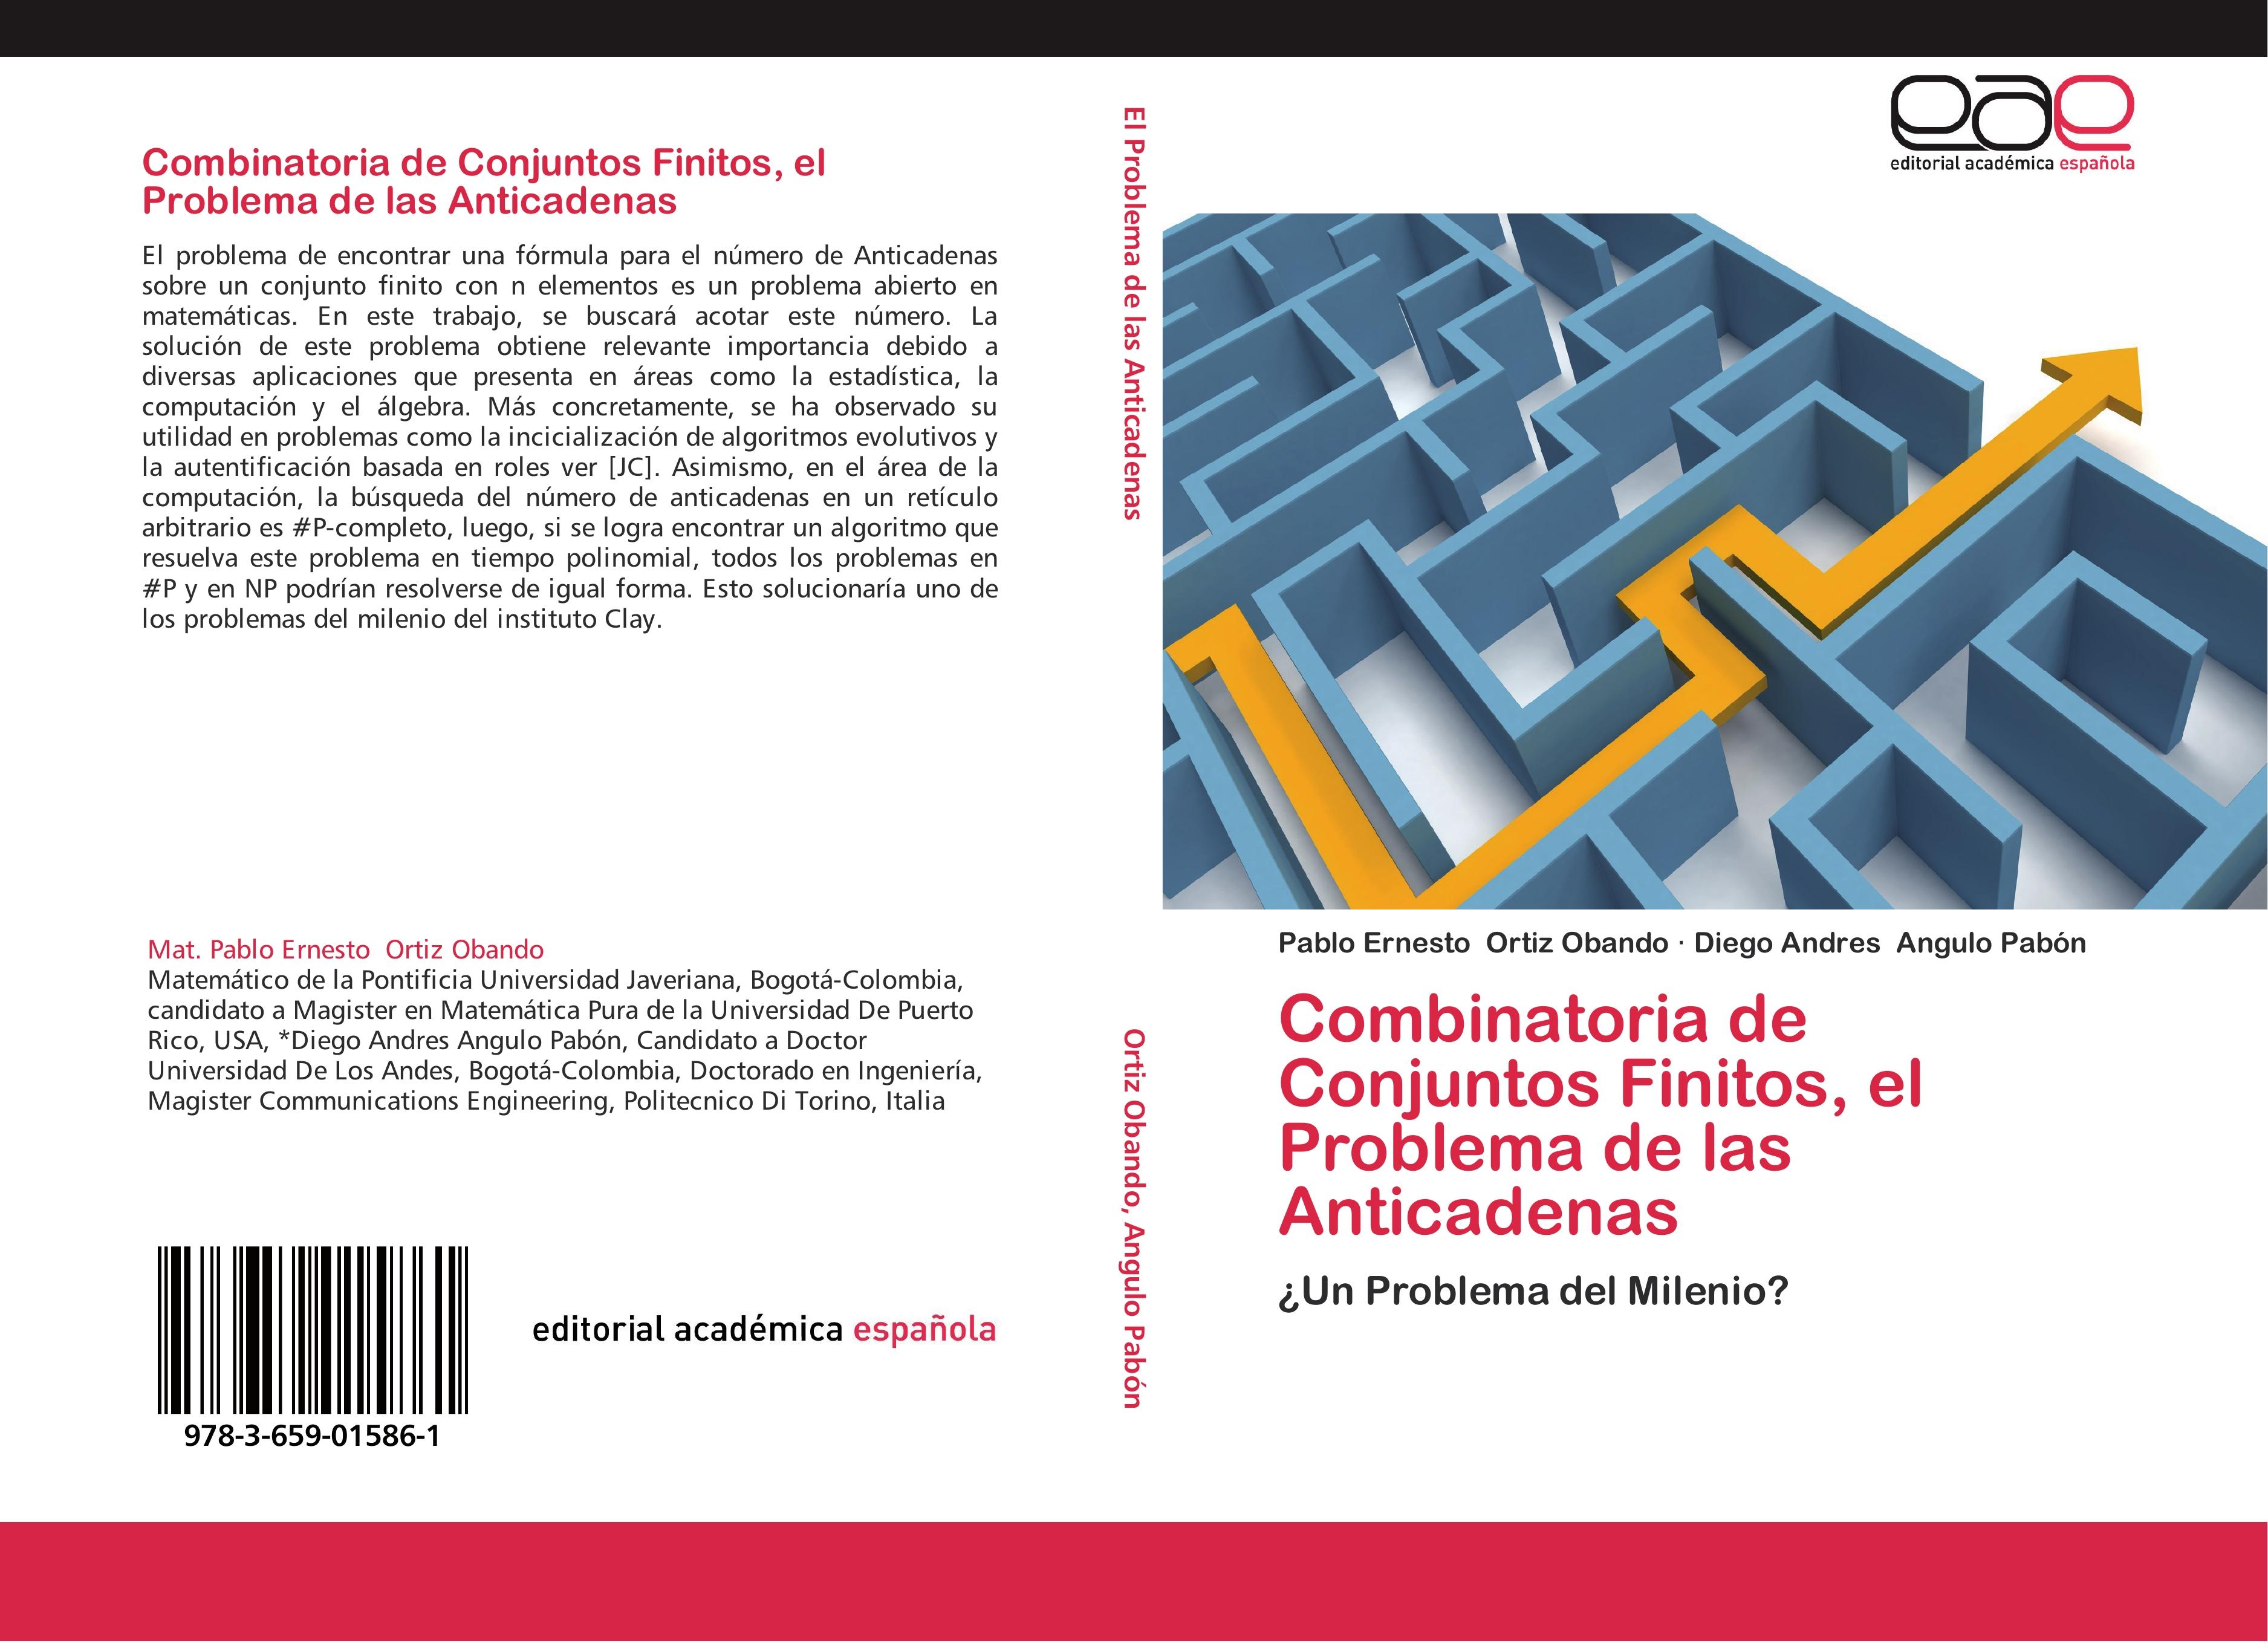 Combinatoria de Conjuntos Finitos, el Problema de las Anticadenas - Pablo Ernesto Ortiz Obando Diego Andres Angulo Pabón